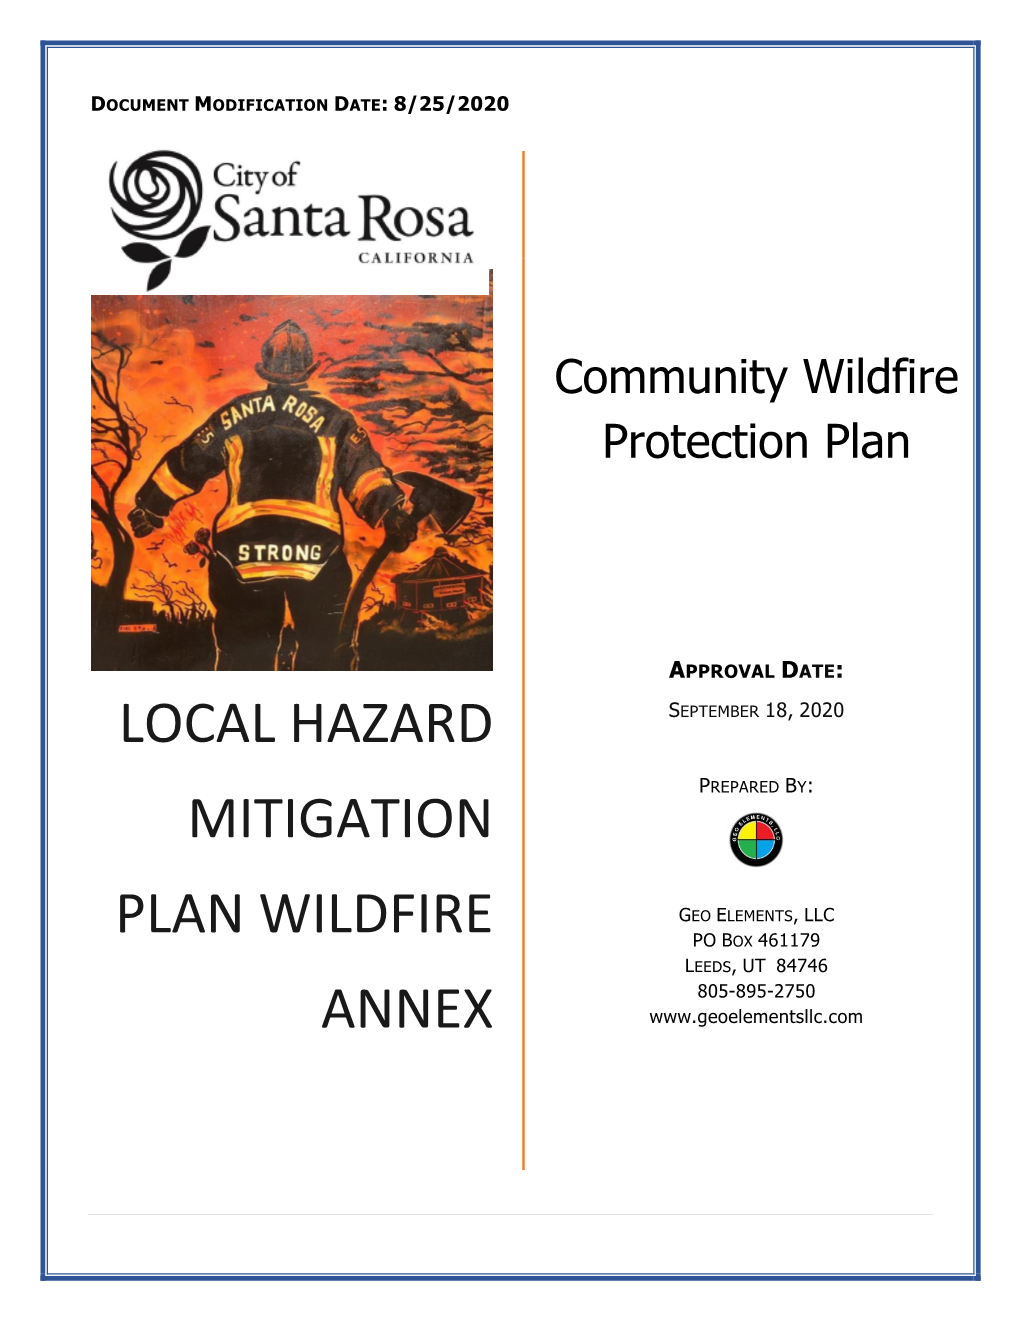 Local Hazard Mitigation PLAN WILDFIRE ANNEX